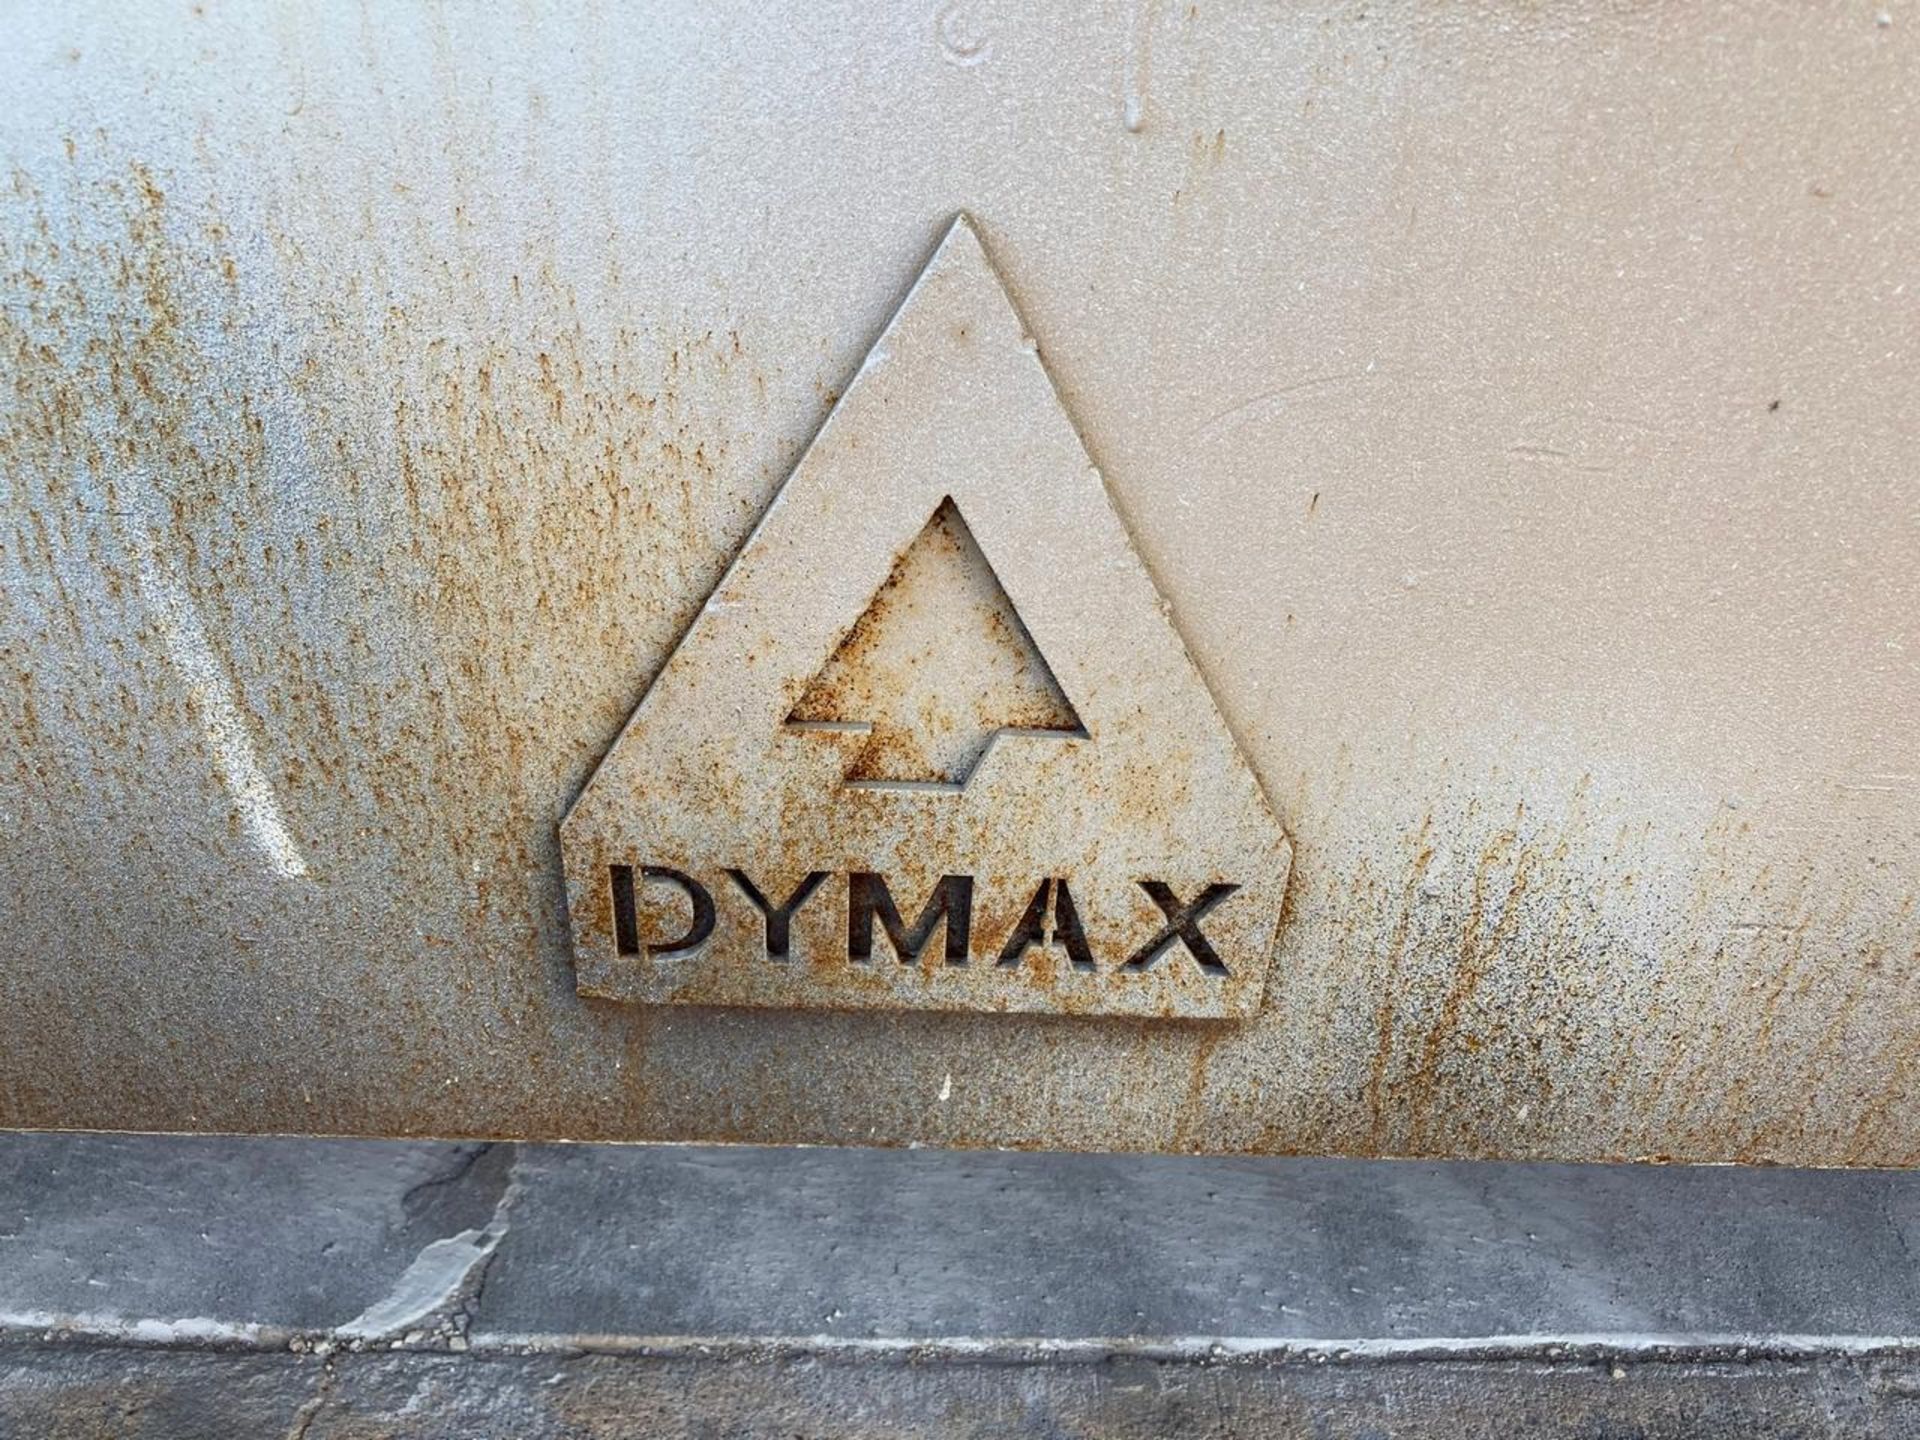 Dymax 120,000 Capacity Rail Car - Image 3 of 3